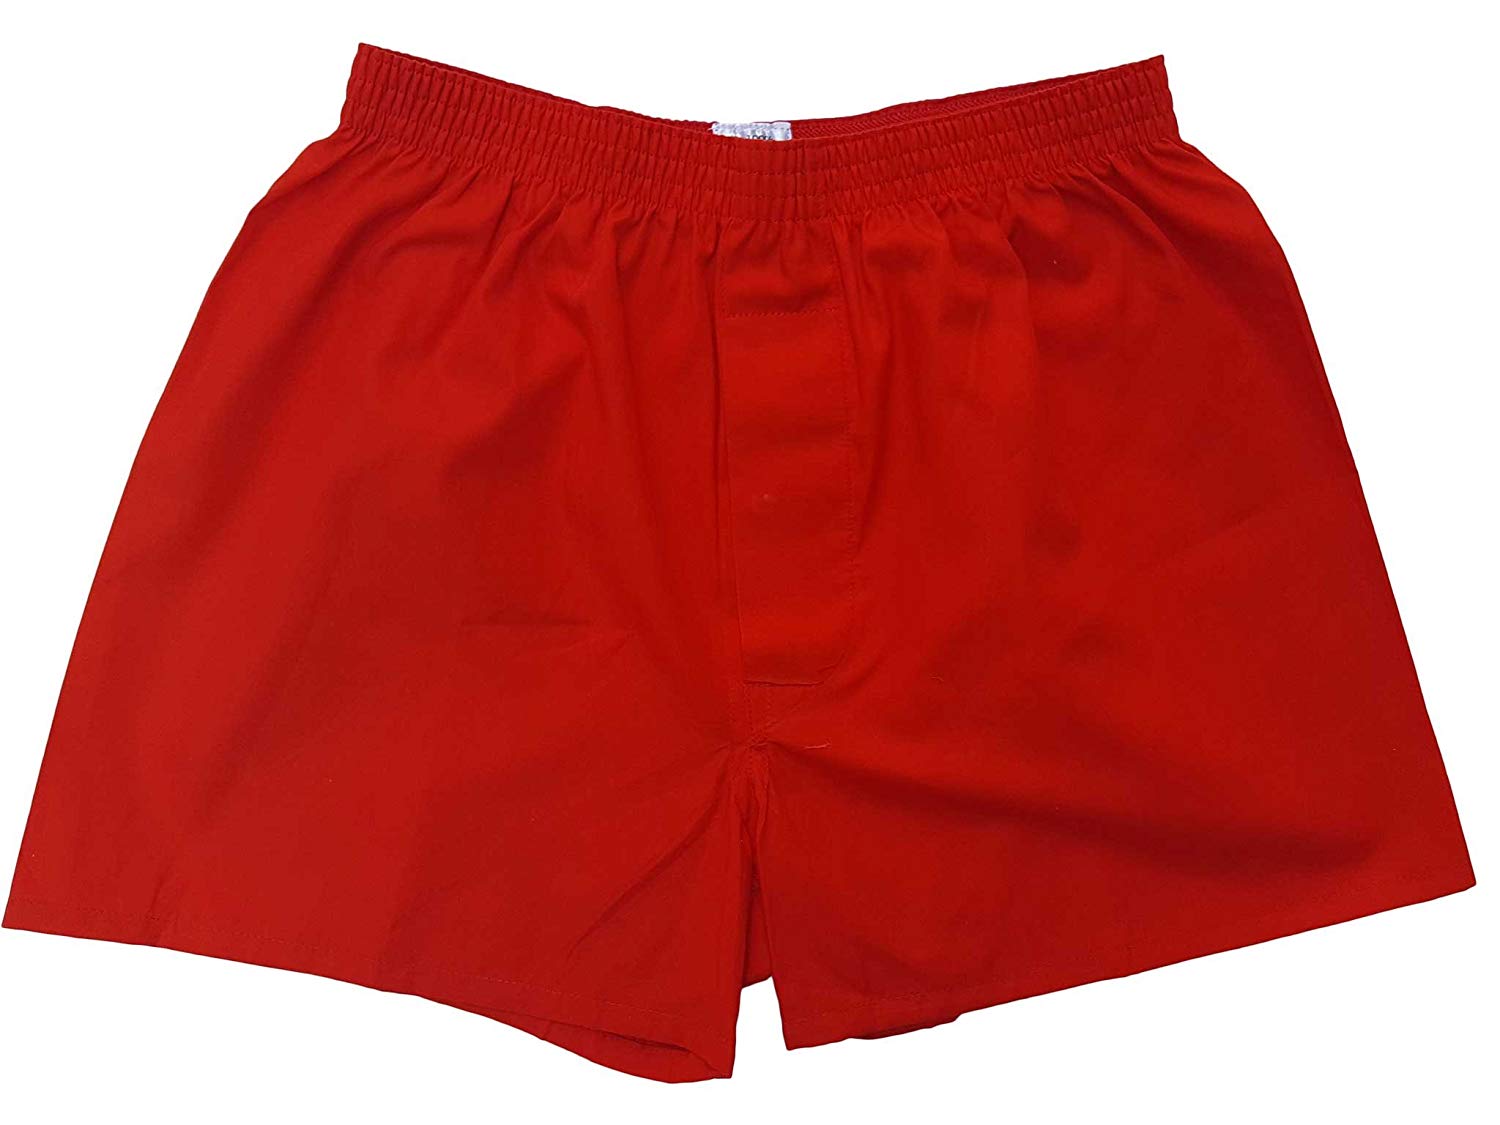 トランクス 赤 赤色 赤い 日本製 2枚 セット 父の日 ギフト 誕生日 プレゼント 福袋 還暦祝い メンズ 下着 男性 綿100% 前開き 赤パンツ 紳士 パンツ 送料無料 ゆうパケット発送